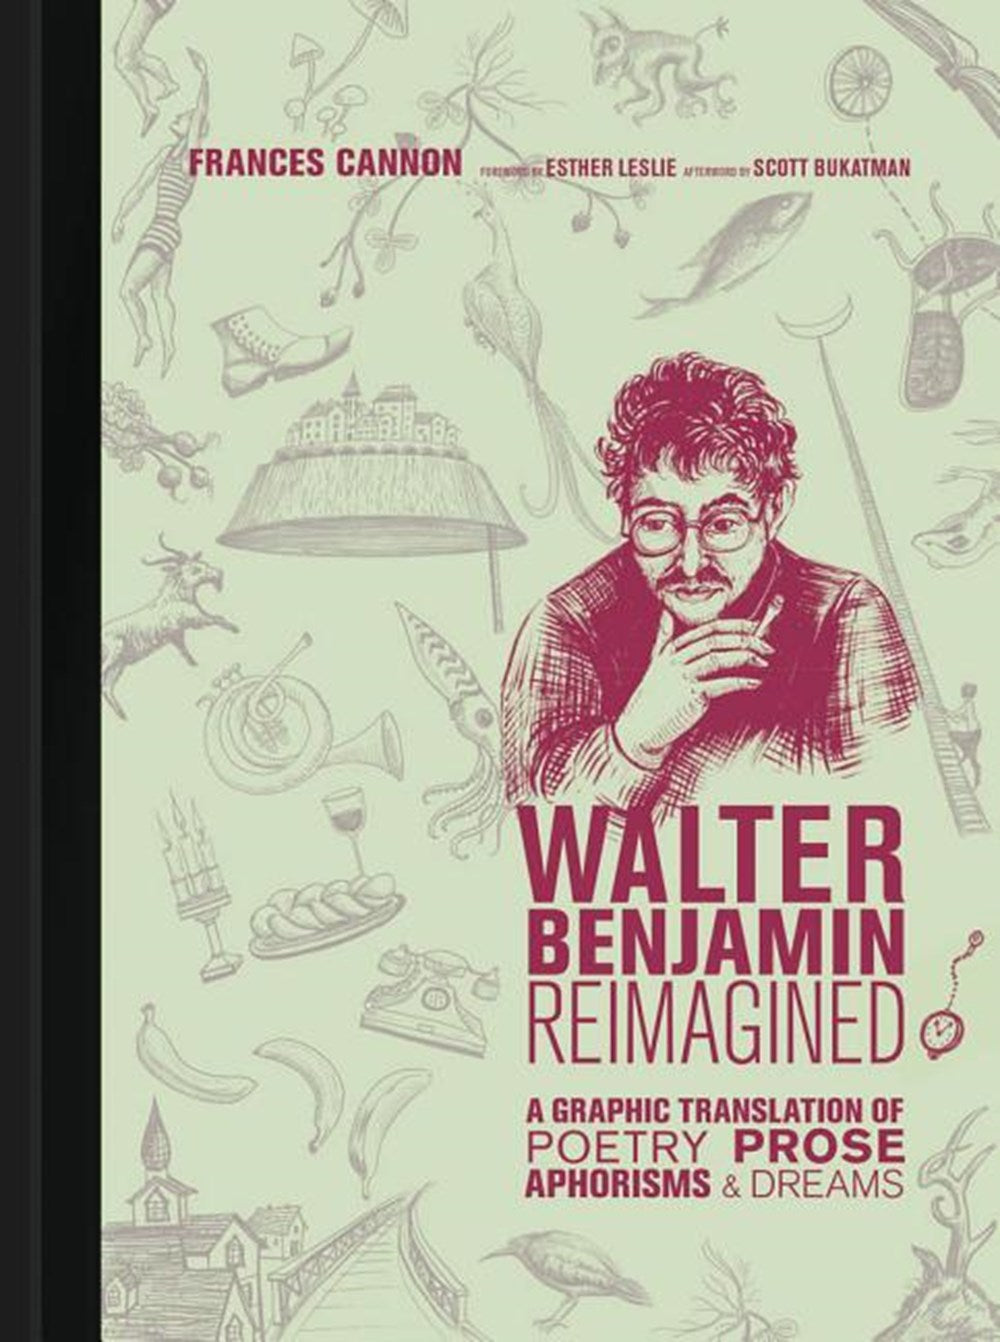 Walter Benjamin Reimagined : A Graphic Translation of Poetry, Prose, Aphorisms, and Dreams ร้านหนังสือและสิ่งของ เป็นร้านหนังสือภาษาอังกฤษหายาก และร้านกาแฟ หรือ บุ๊คคาเฟ่ ตั้งอยู่สุขุมวิท กรุงเทพ